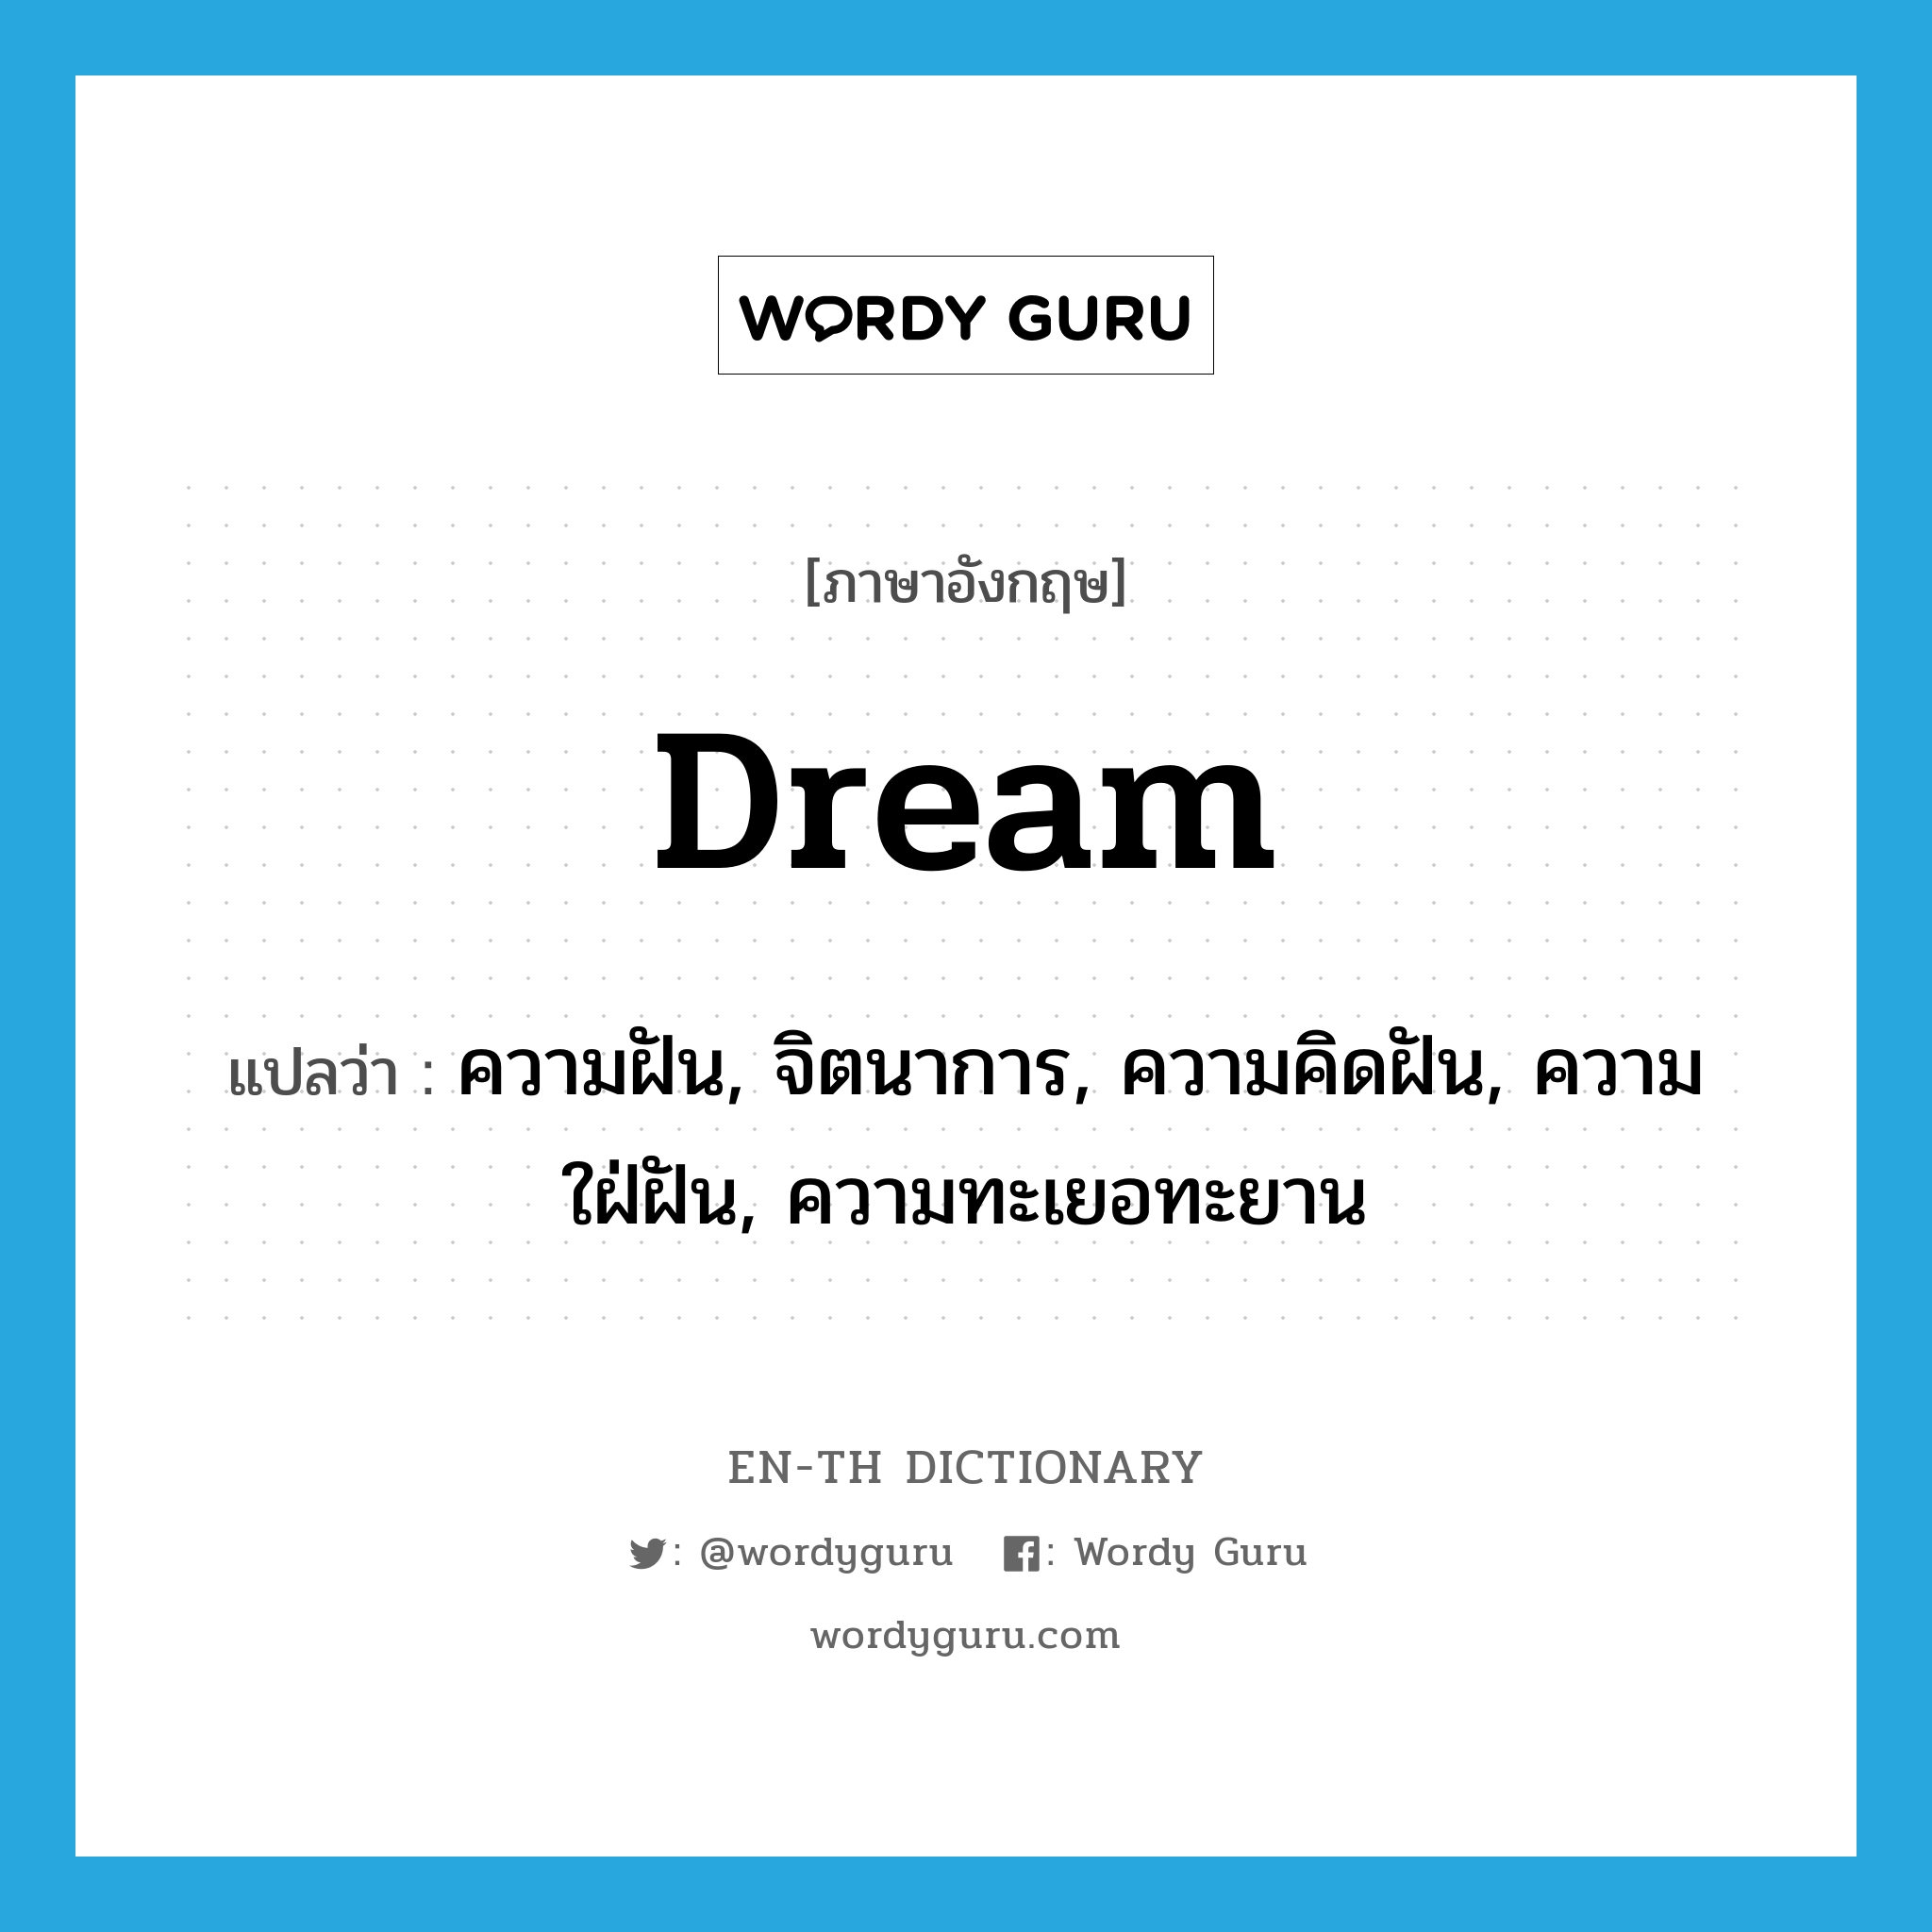 ความฝัน, จิตนาการ, ความคิดฝัน, ความใฝ่ฝัน, ความทะเยอทะยาน ภาษาอังกฤษ?, คำศัพท์ภาษาอังกฤษ ความฝัน, จิตนาการ, ความคิดฝัน, ความใฝ่ฝัน, ความทะเยอทะยาน แปลว่า dream ประเภท N หมวด N